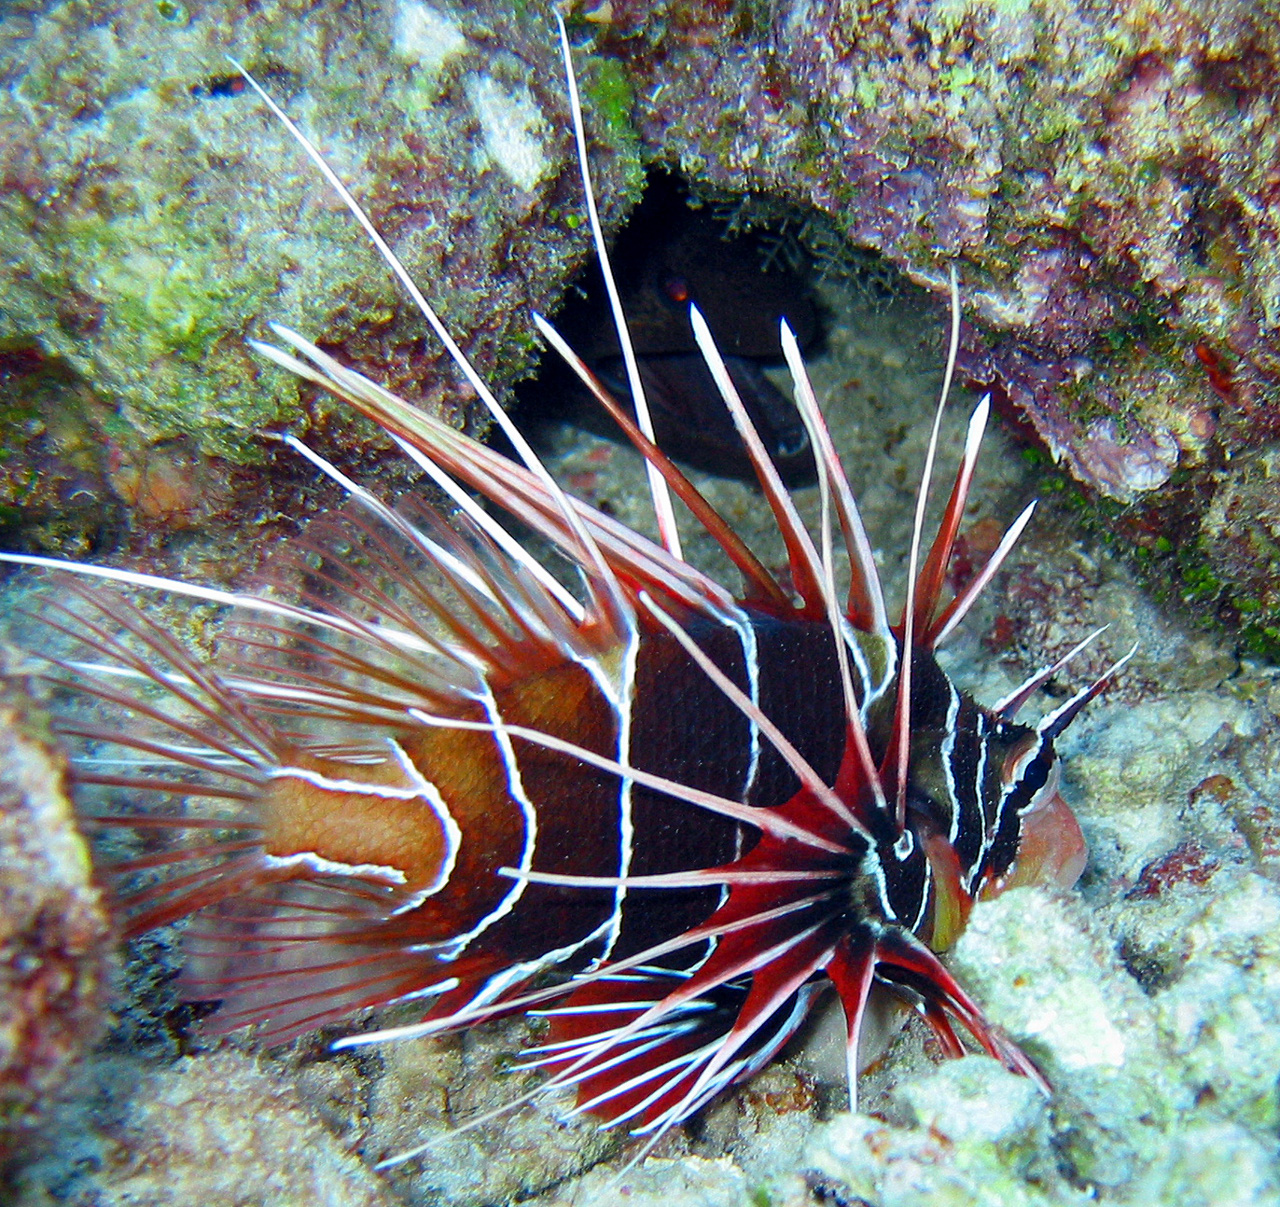 Pesce scorpione (Pterois radiata)